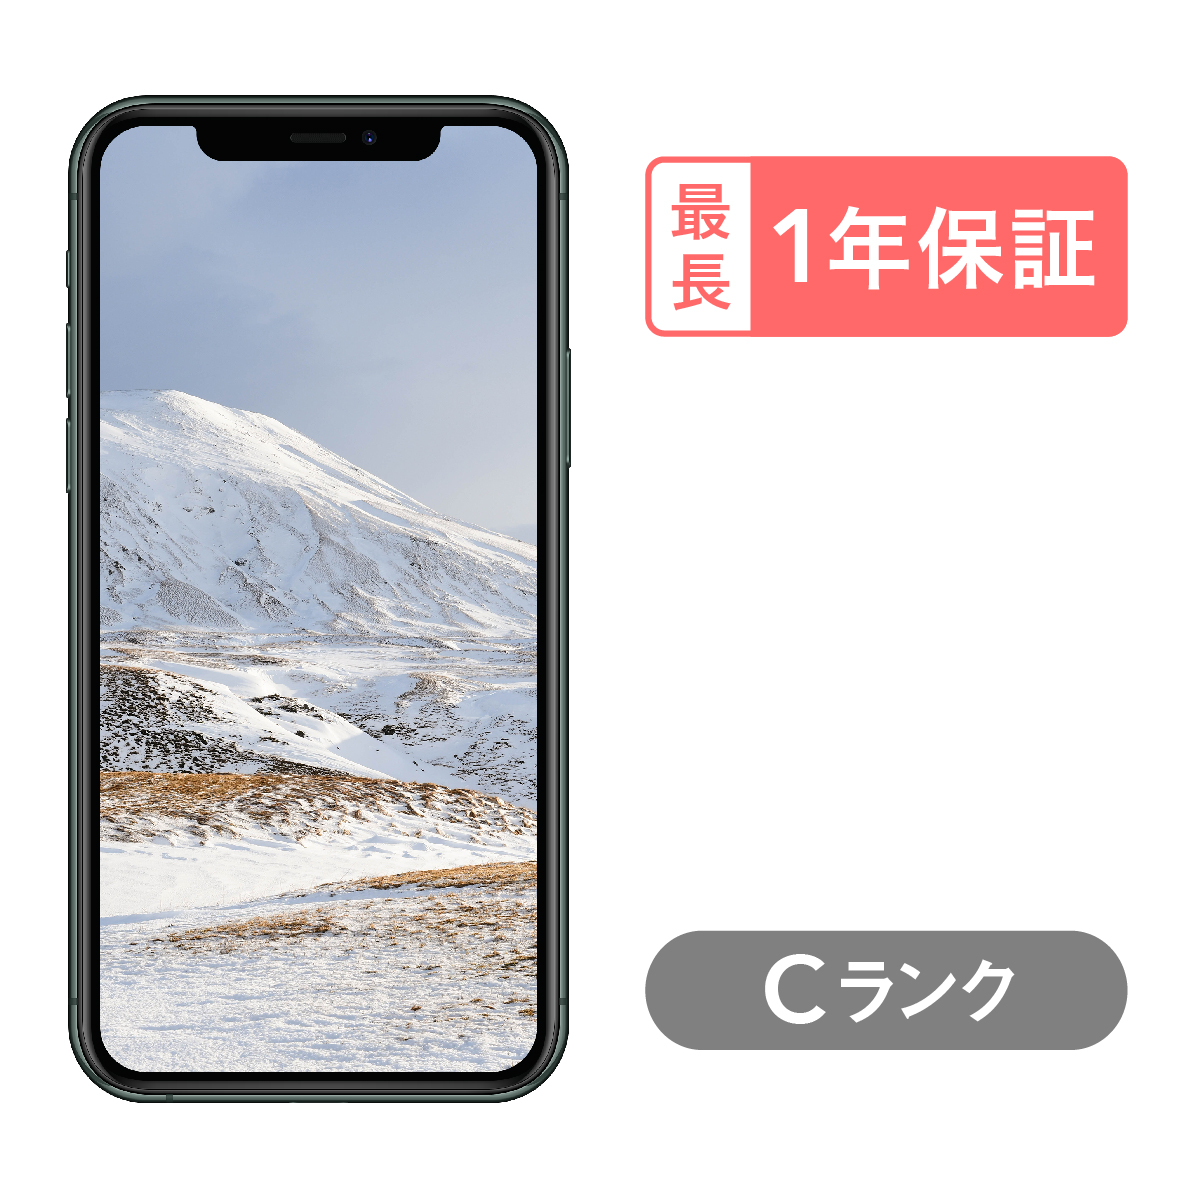 【楽天市場】【4/1 ポイント最大2倍!】iPhone 11 Pro 256GB 中古 